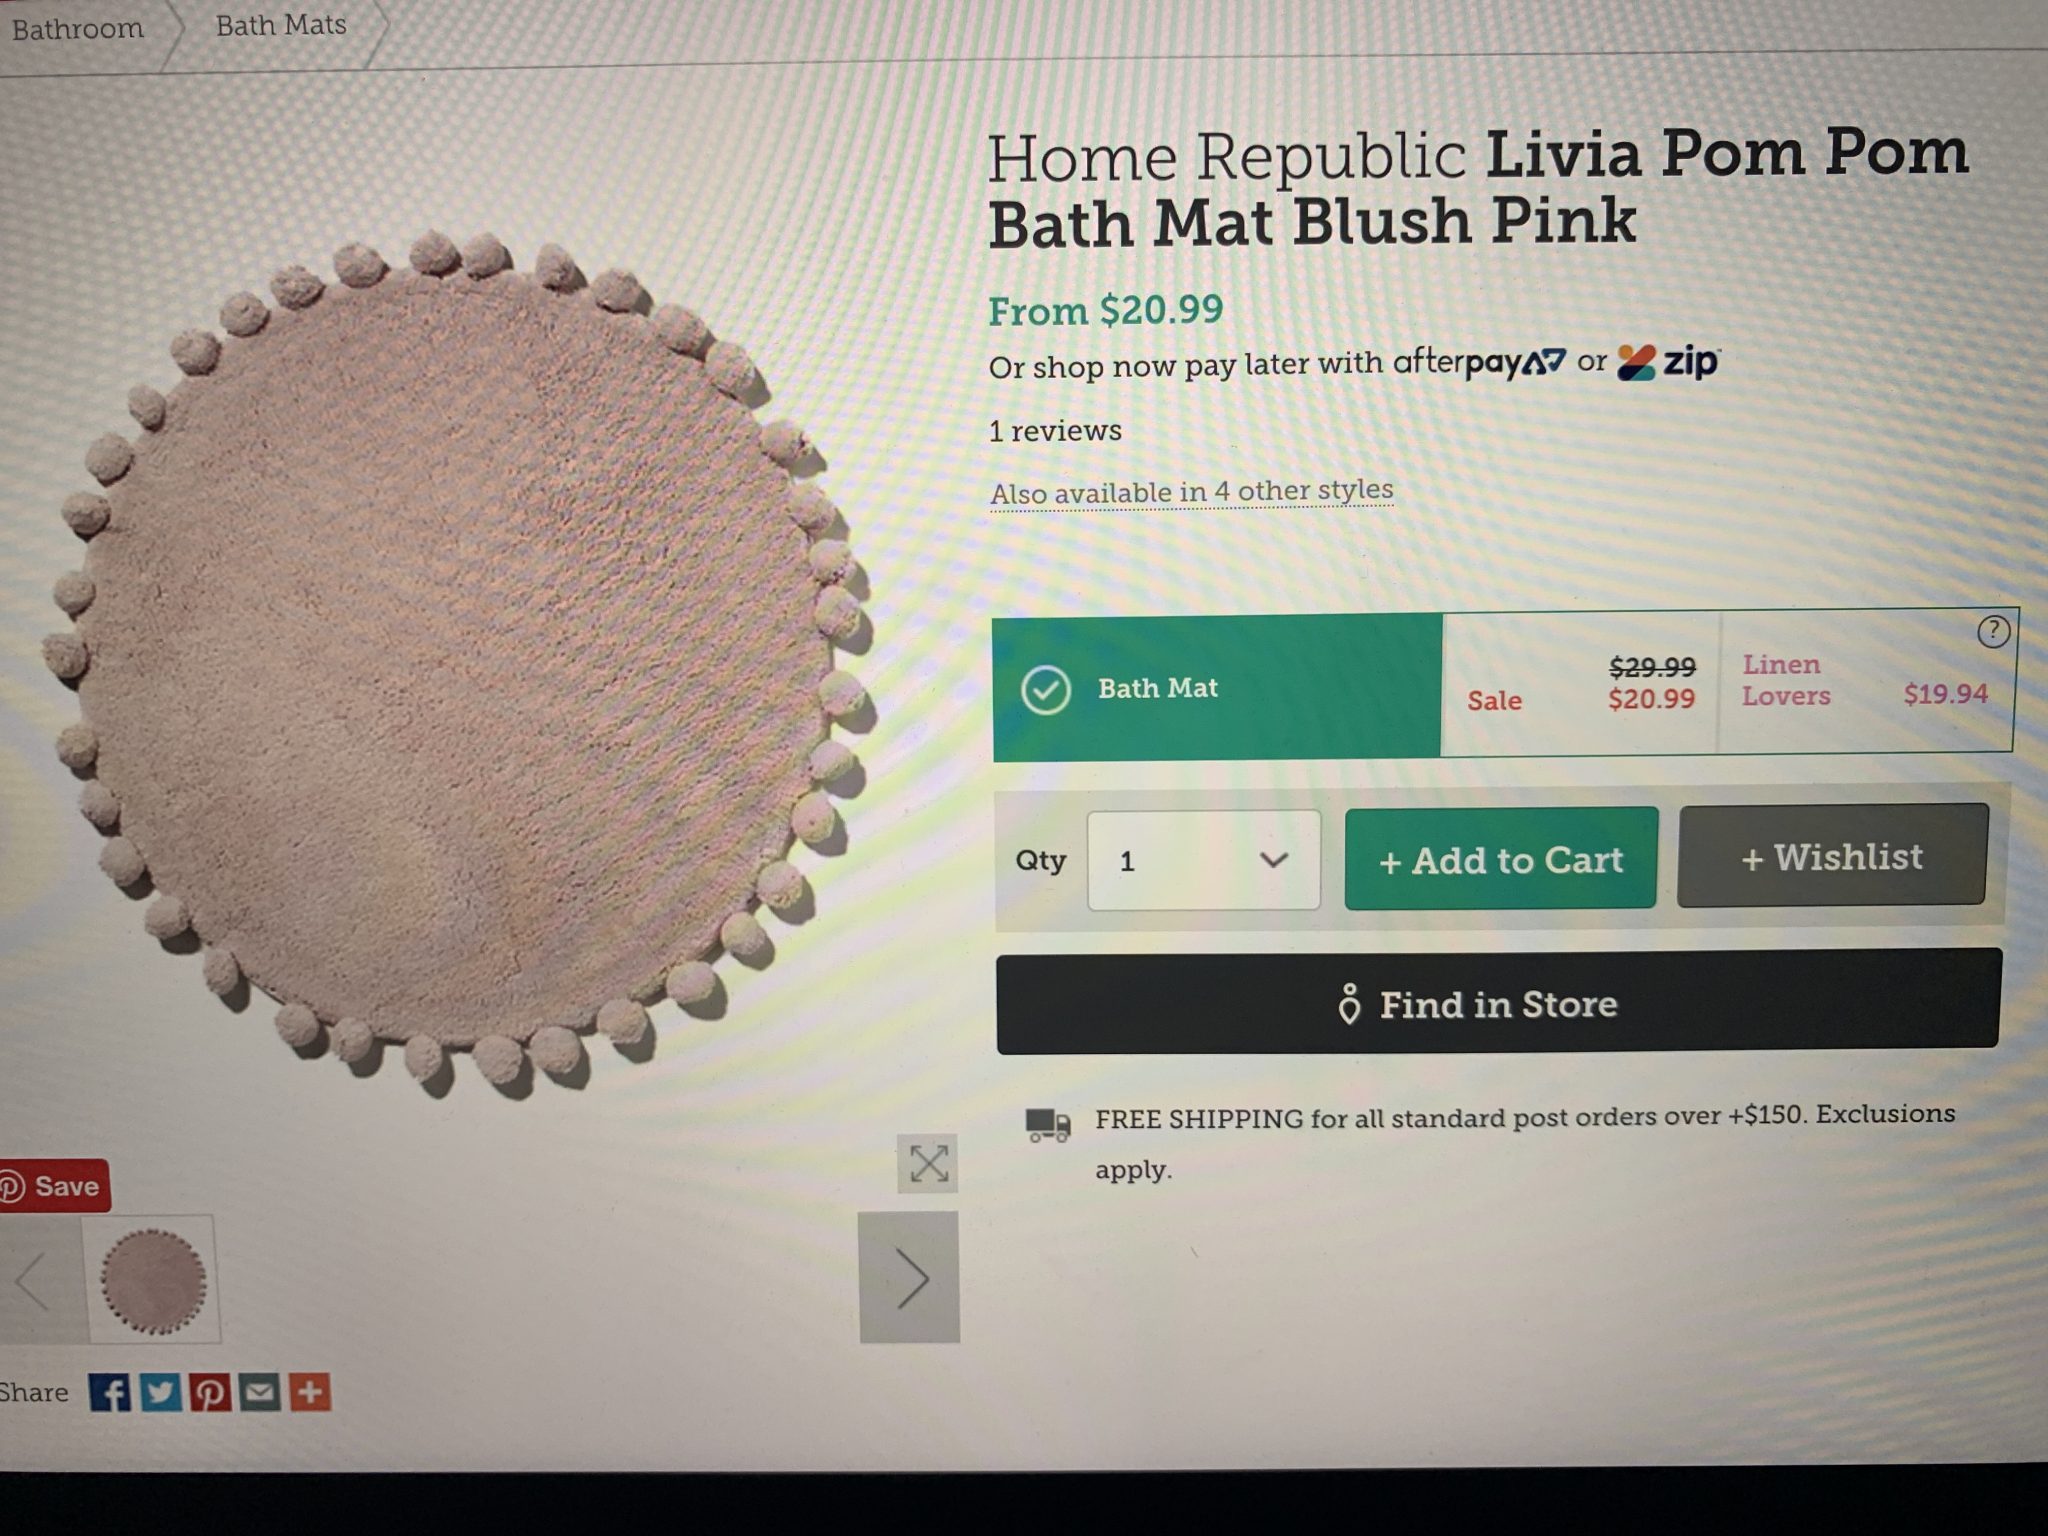 Home Republic Livia Pom Pom Bath Mat Blush Pink